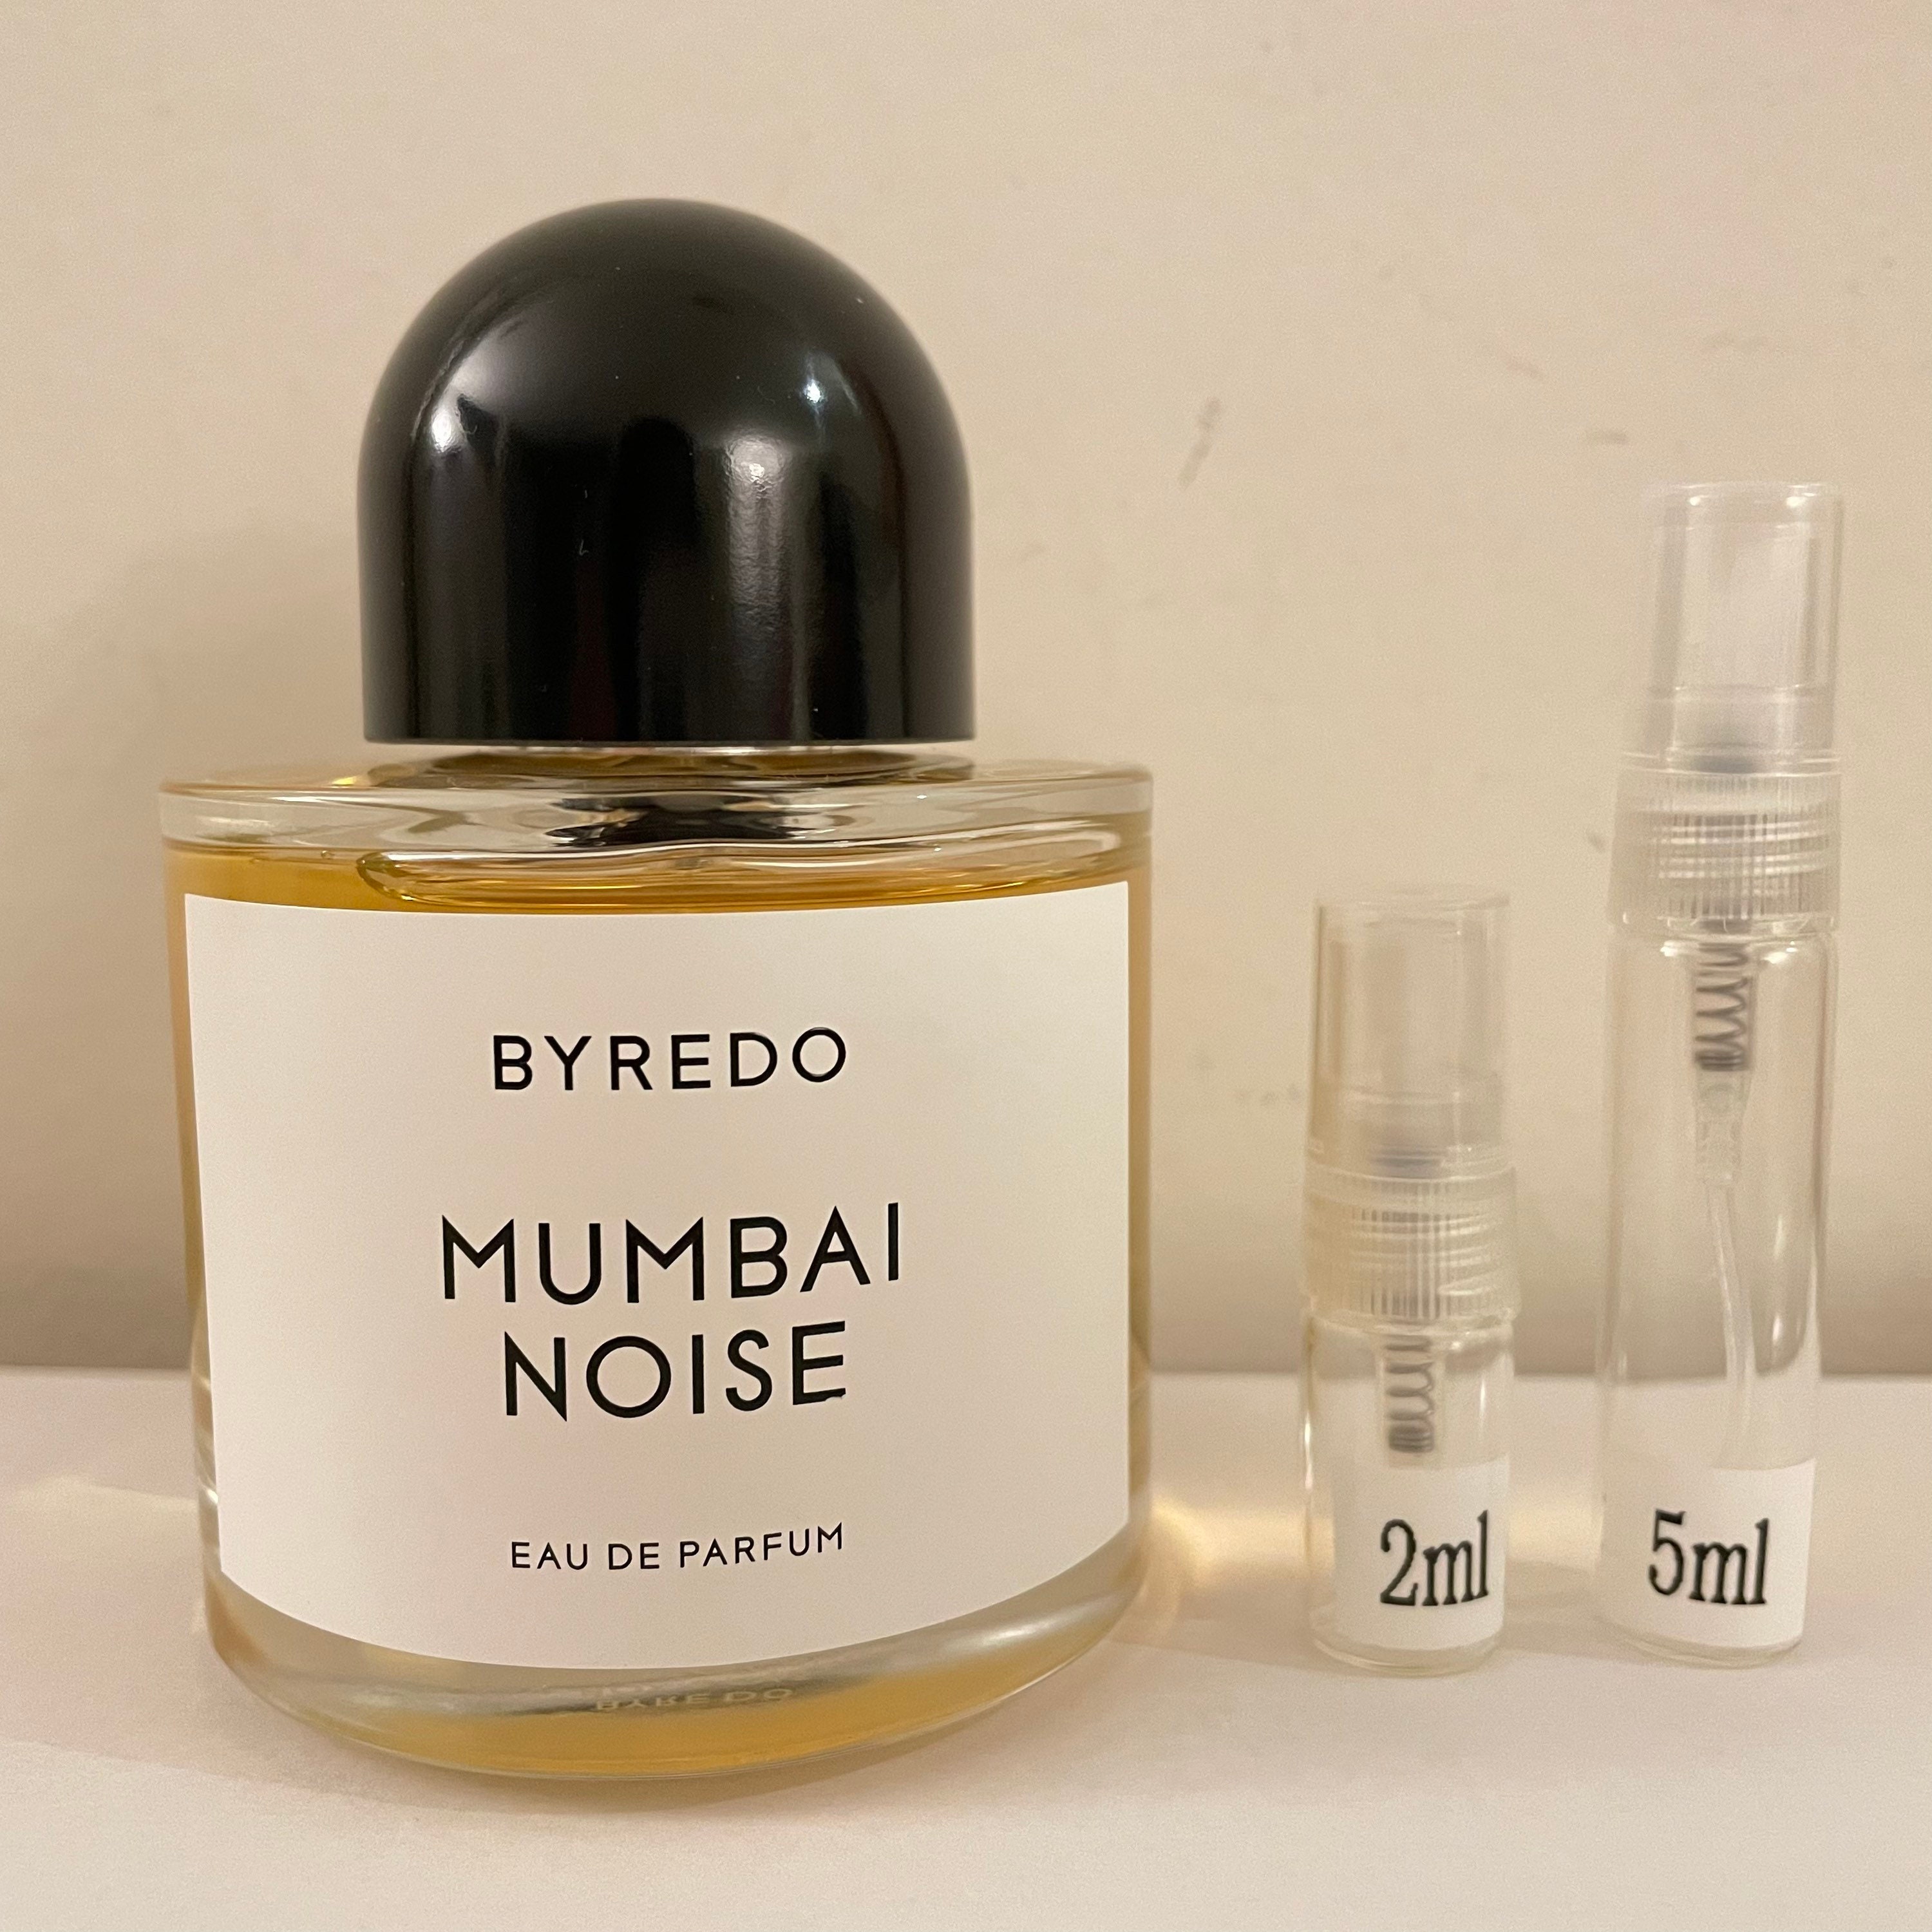 Byredo Mumbai Noise стик. Byredo Mumbai Noise объем. Mumbai Noise Byredo описание аромата фото что входит в состав данного аромата.